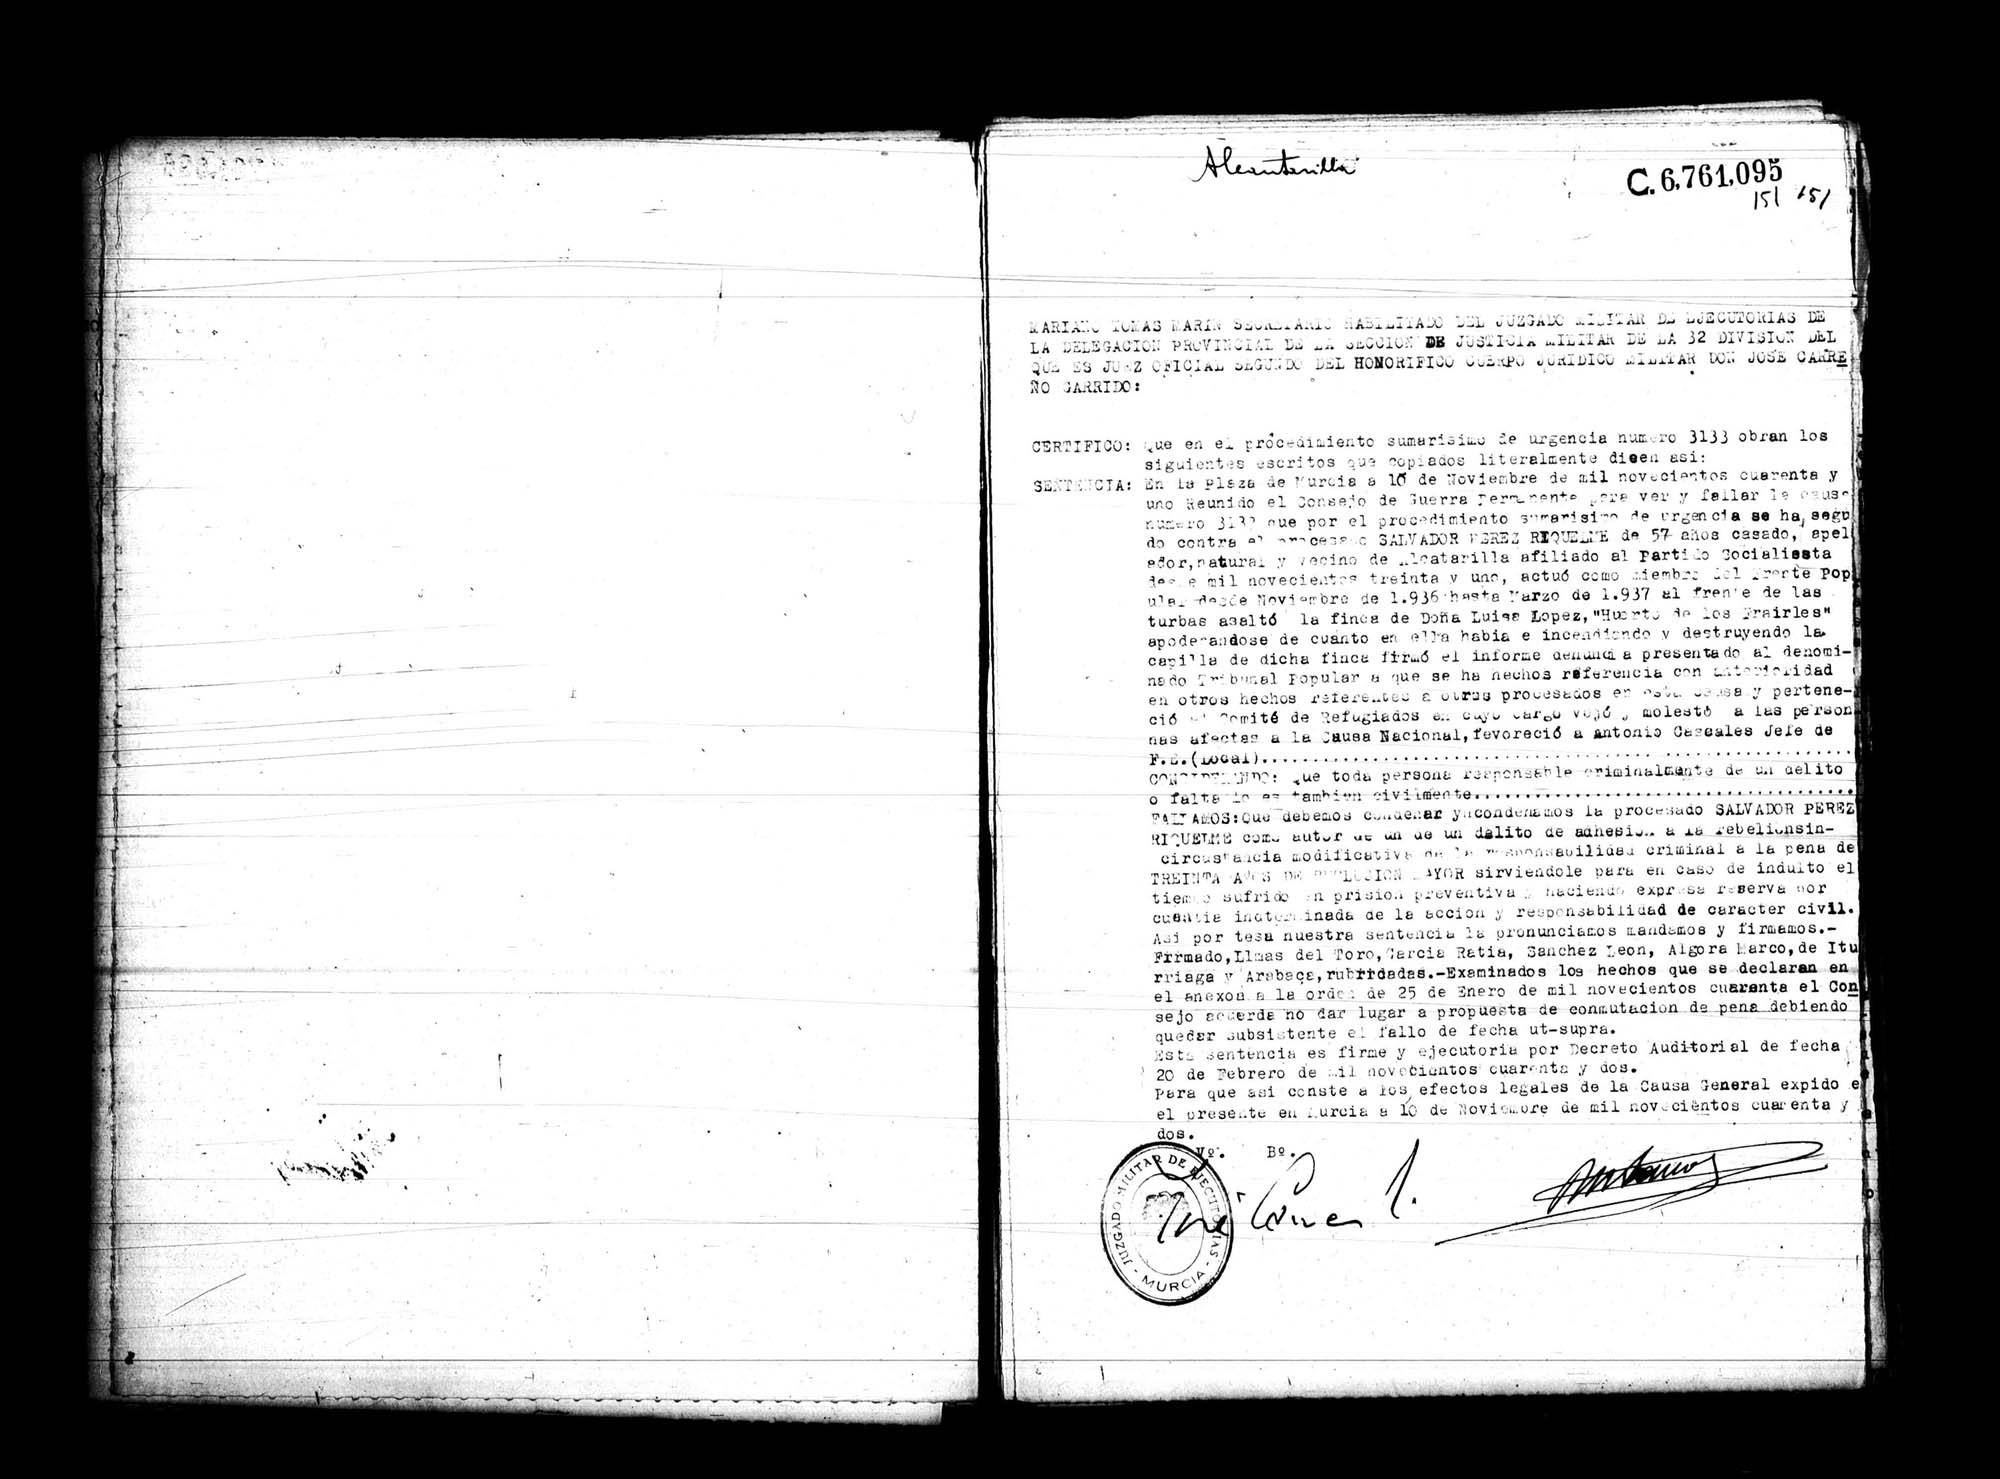 Certificado de la sentencia pronunciada contra Salvador Pérez Riquelme, causa 3133, el 10 de noviembre de 1941 en Murcia.